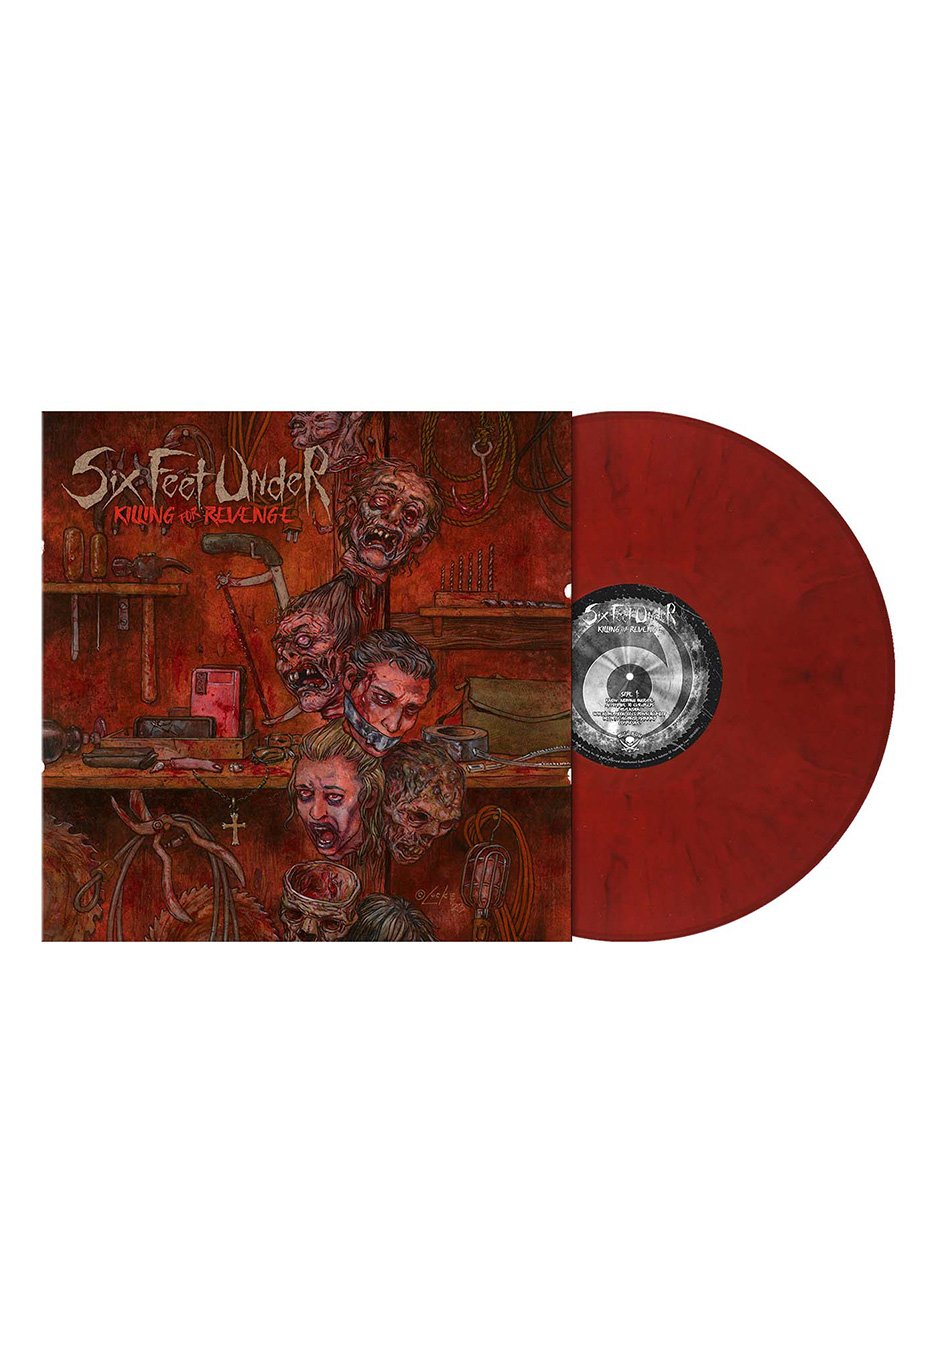 Six Feet Under - Killing For Revenge Ltd. Crusted Blood - Marbled Vinyl